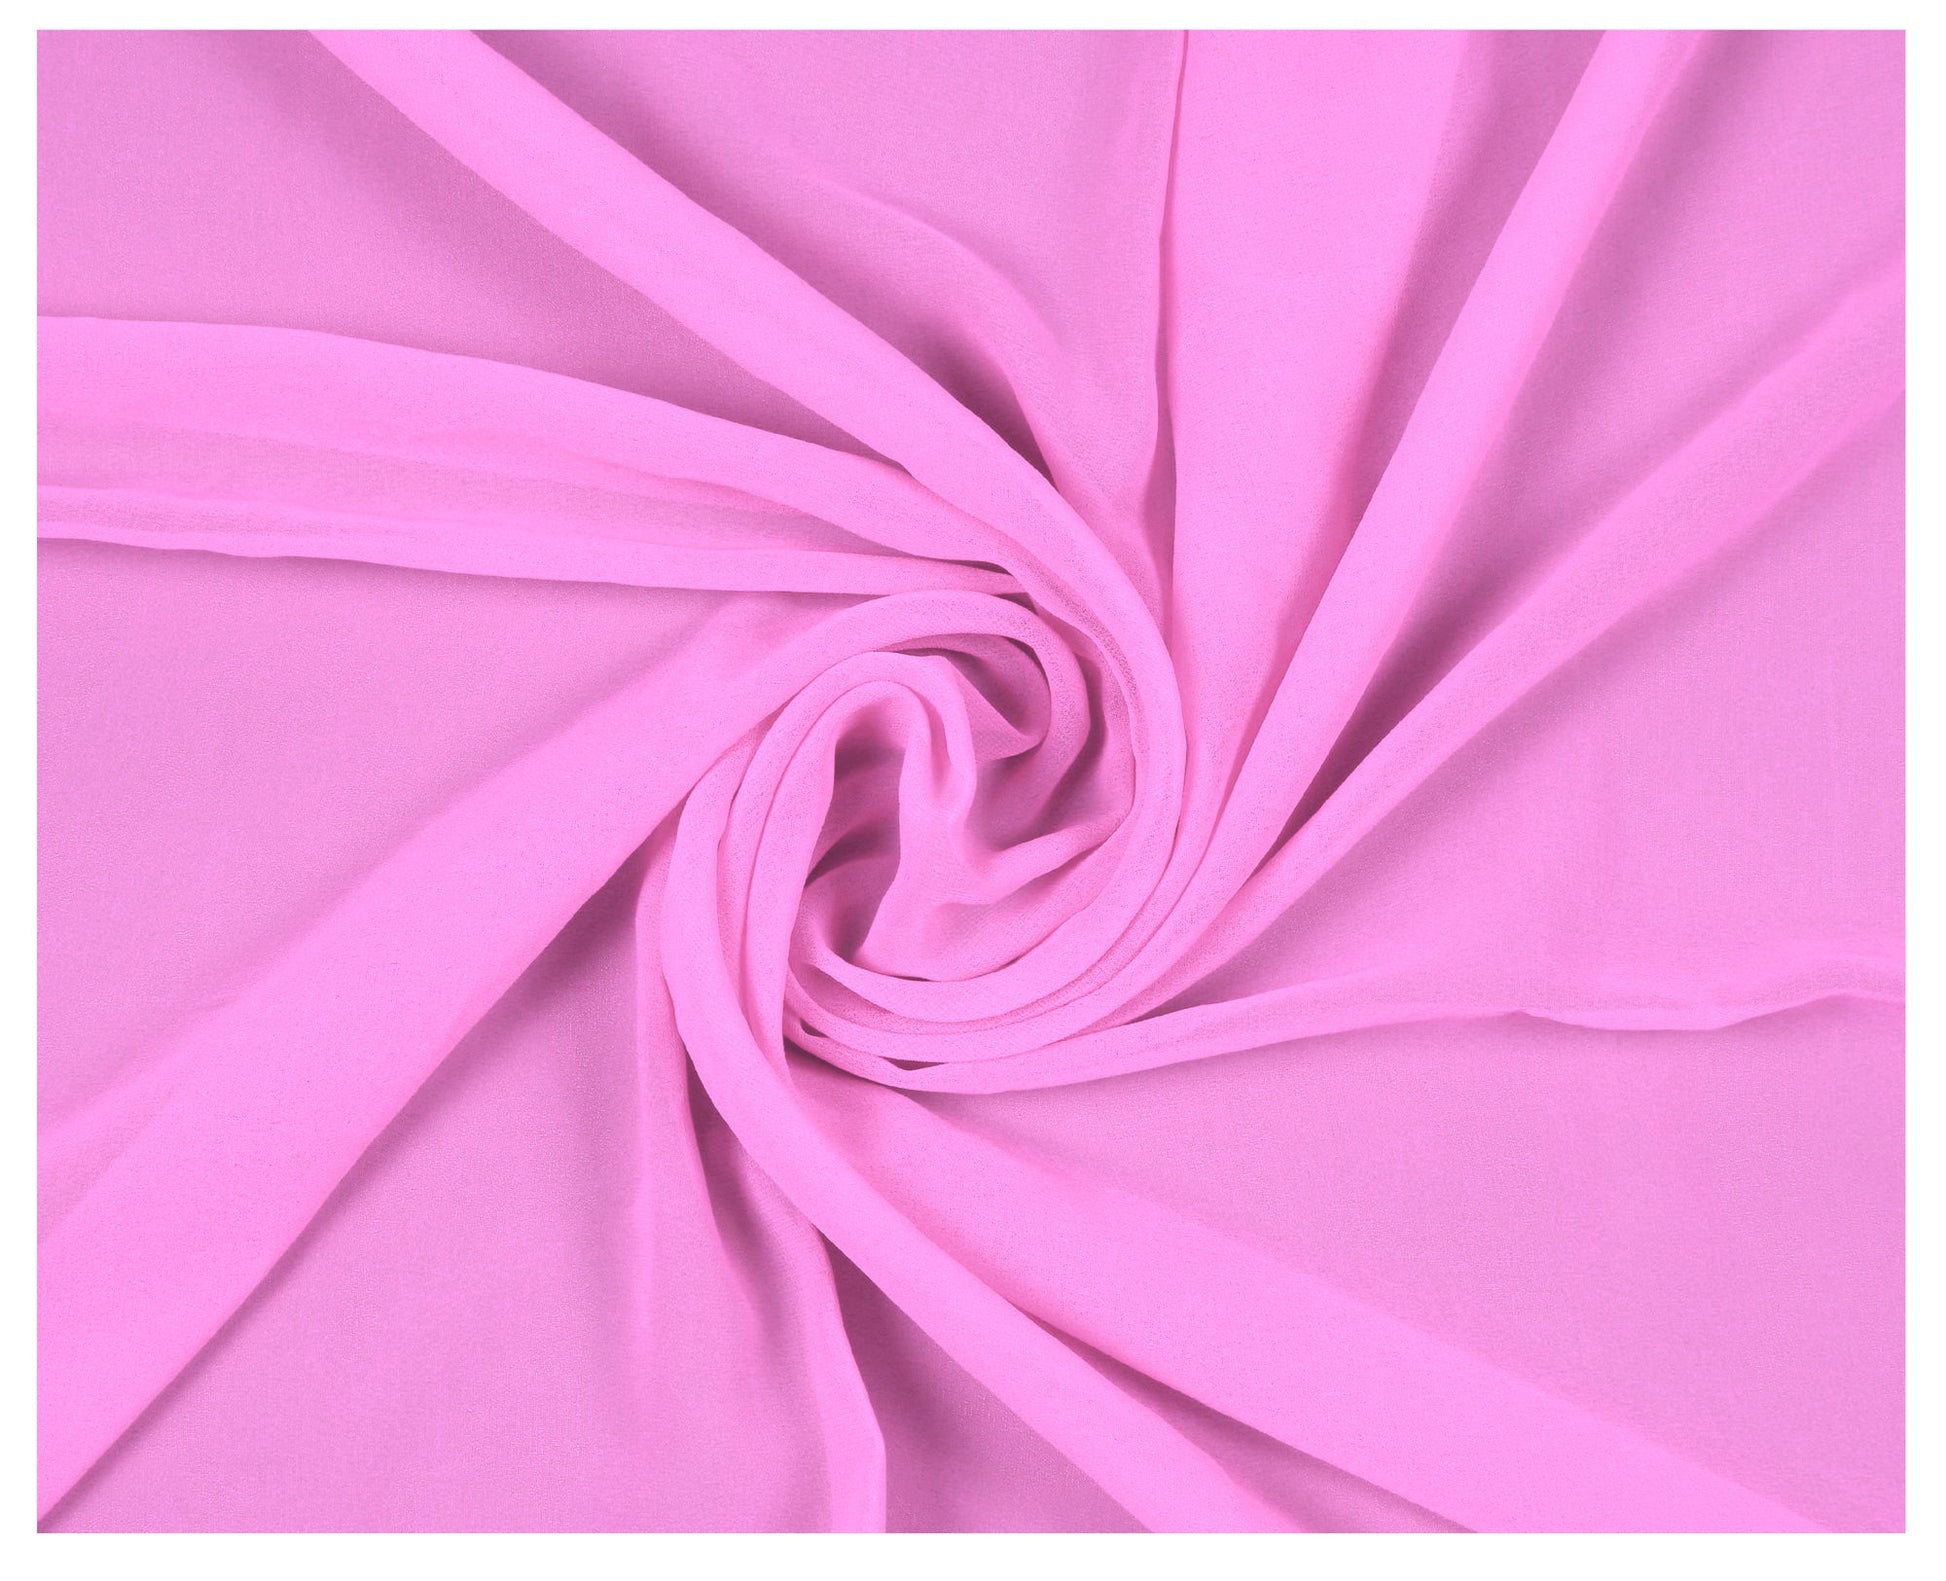 Bubblegum Pink,14386b2b-0cec-4147-84e6-5fe1b0a6321c